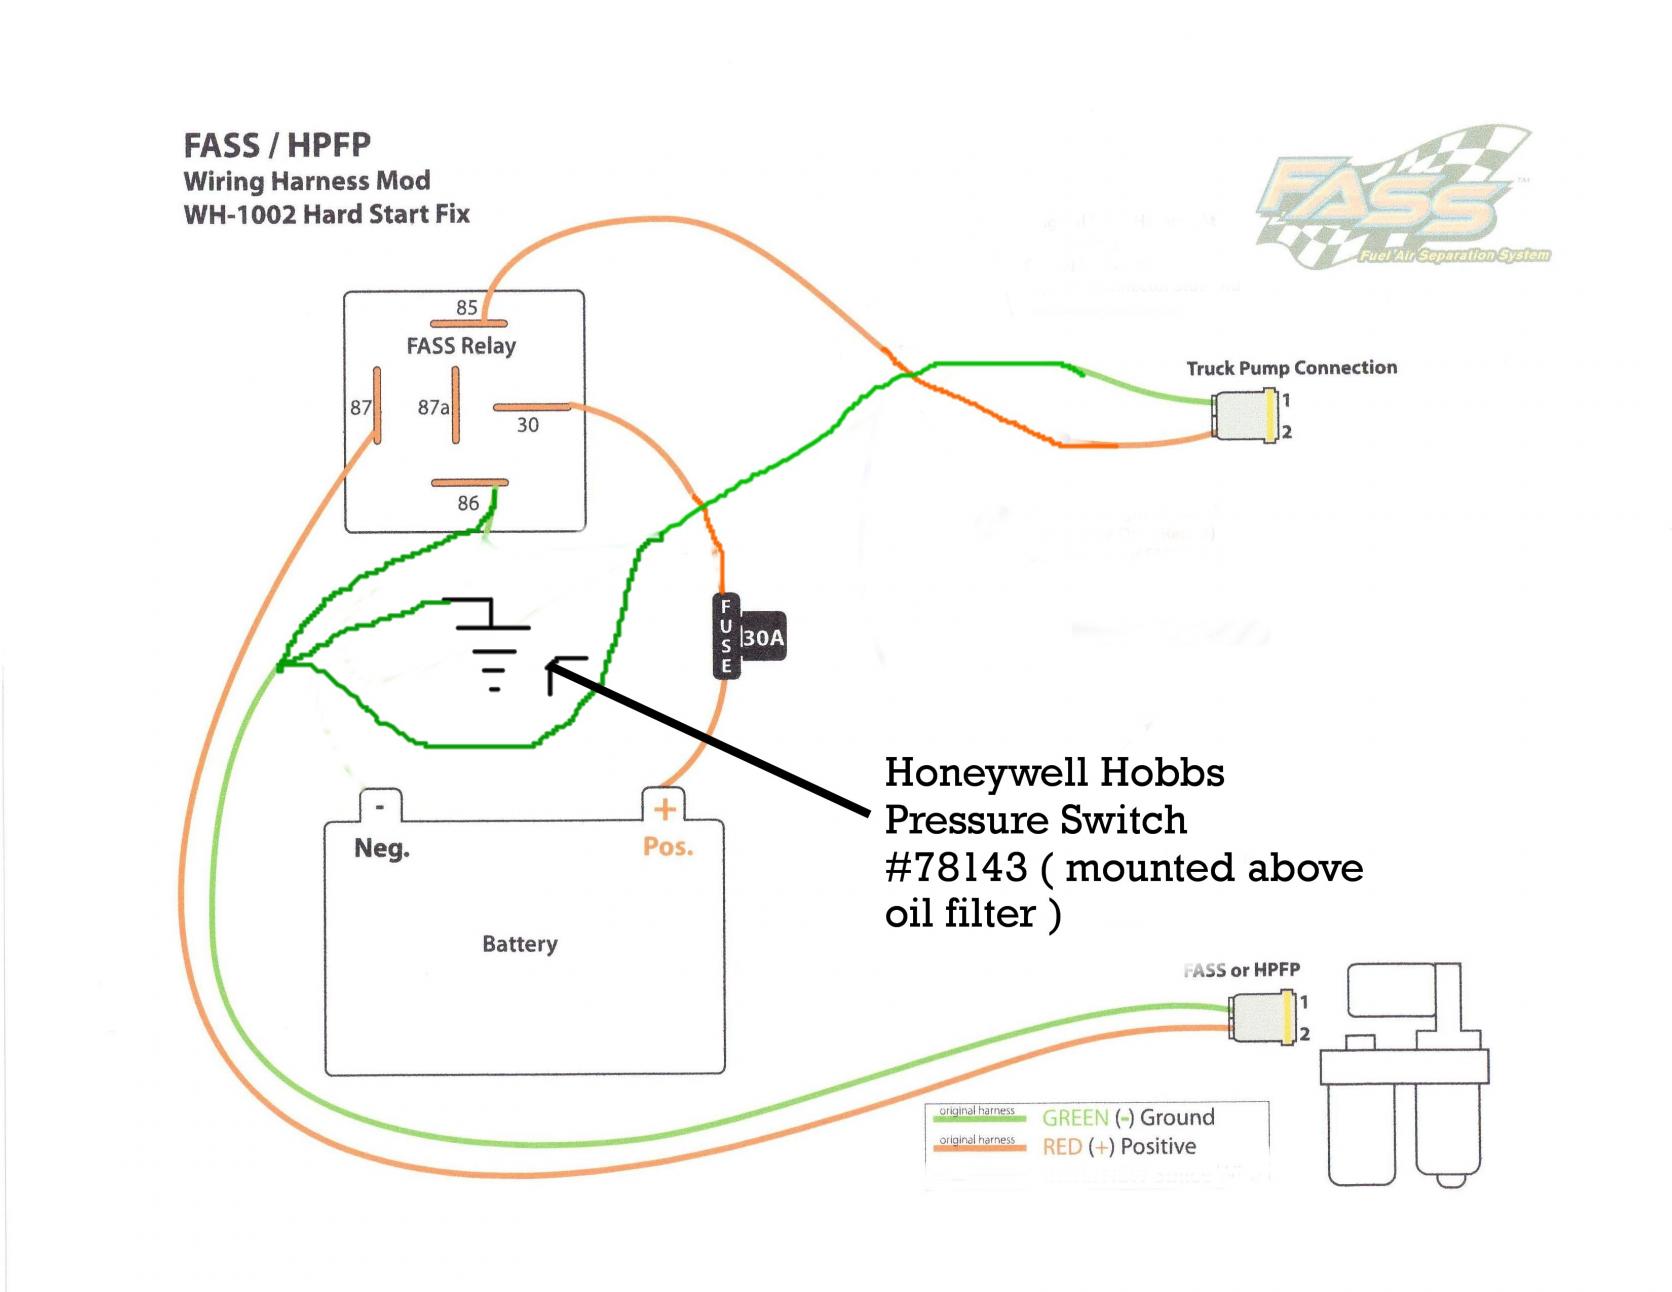 Rewired lift pump - Diesel Bombers Fuel Gauge Wiring Diagram Diesel Bombers